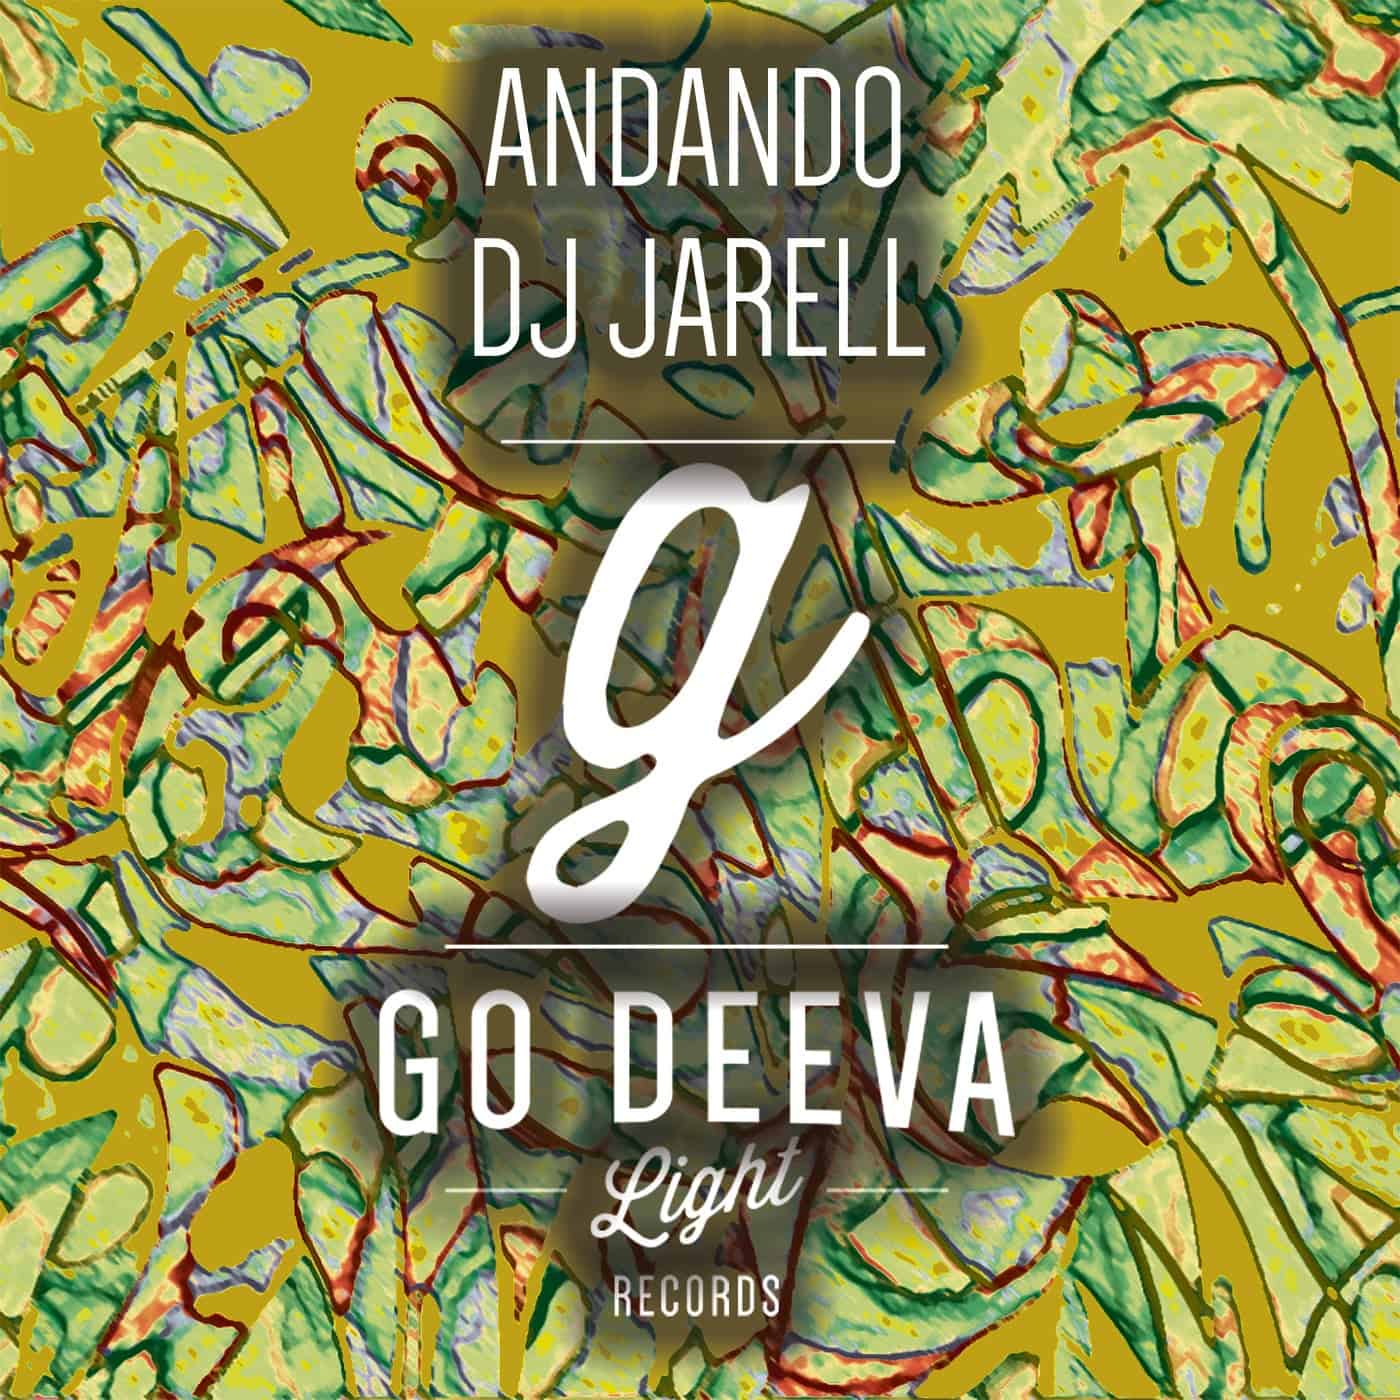 image cover: DJ Jarell - Andando / Go Deeva Light Records